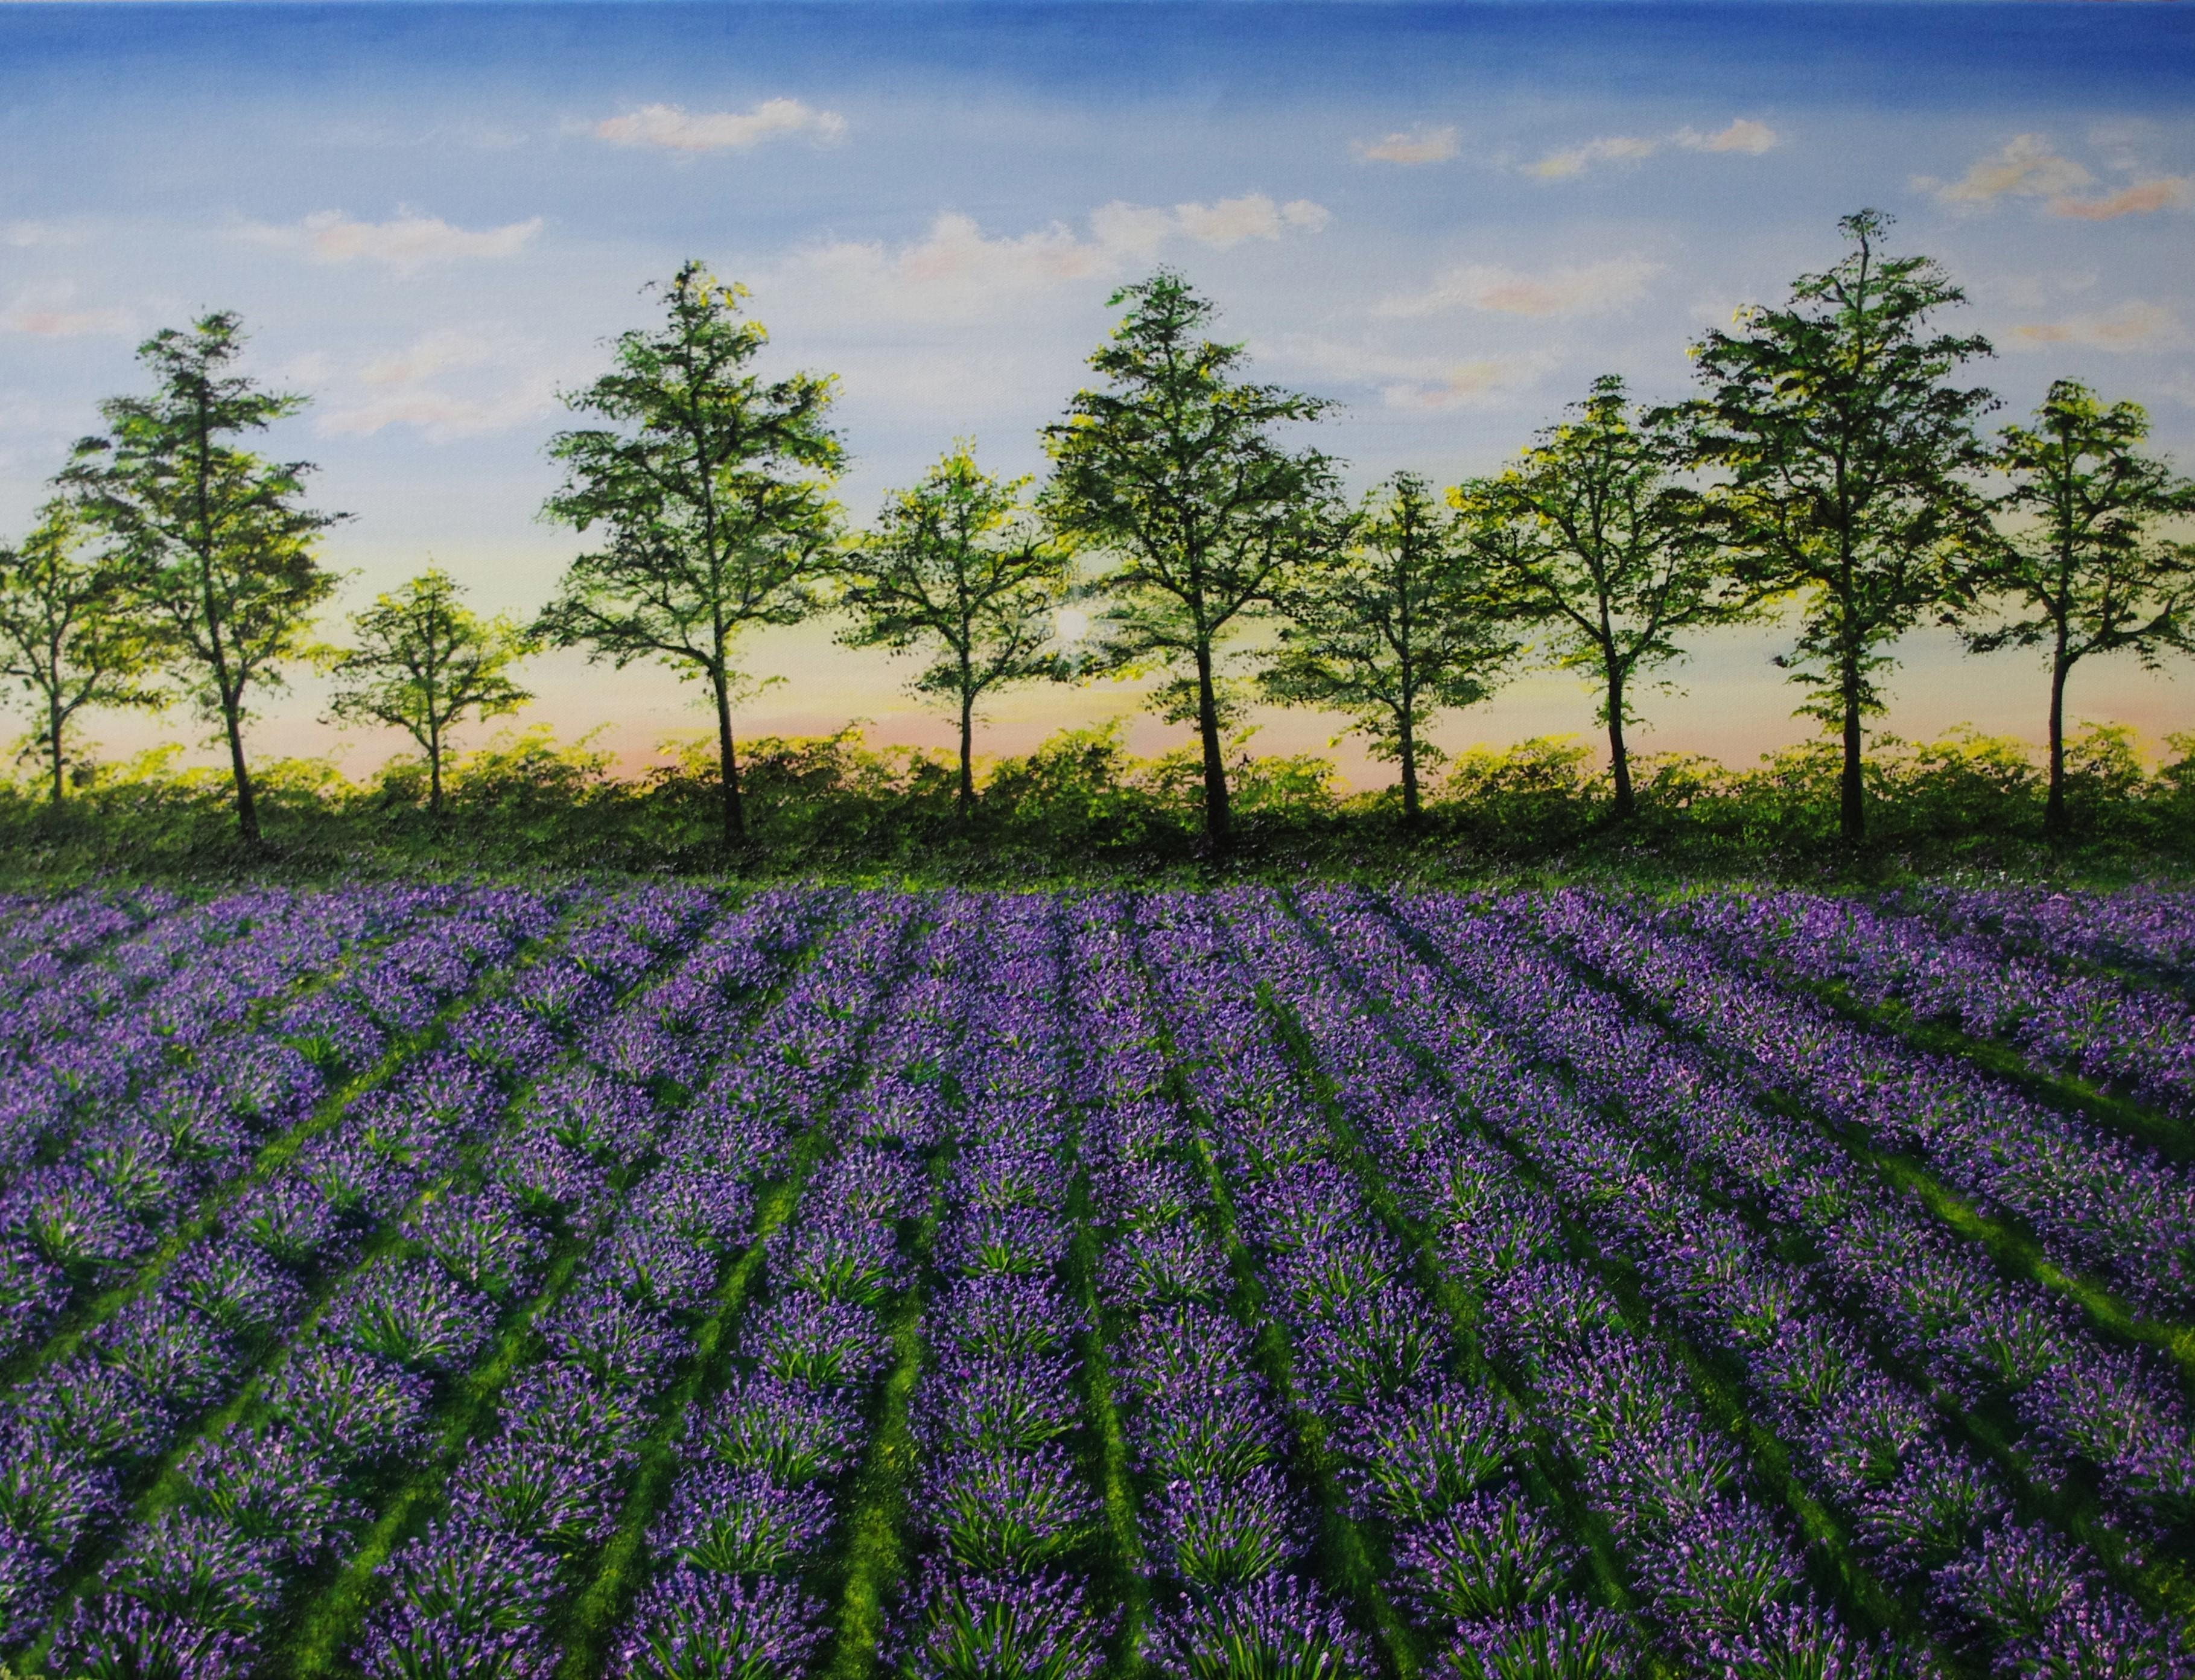 Hazel Thomson Landscape Painting - Lavender Sunset - original British landscape oil painting - contemporary art